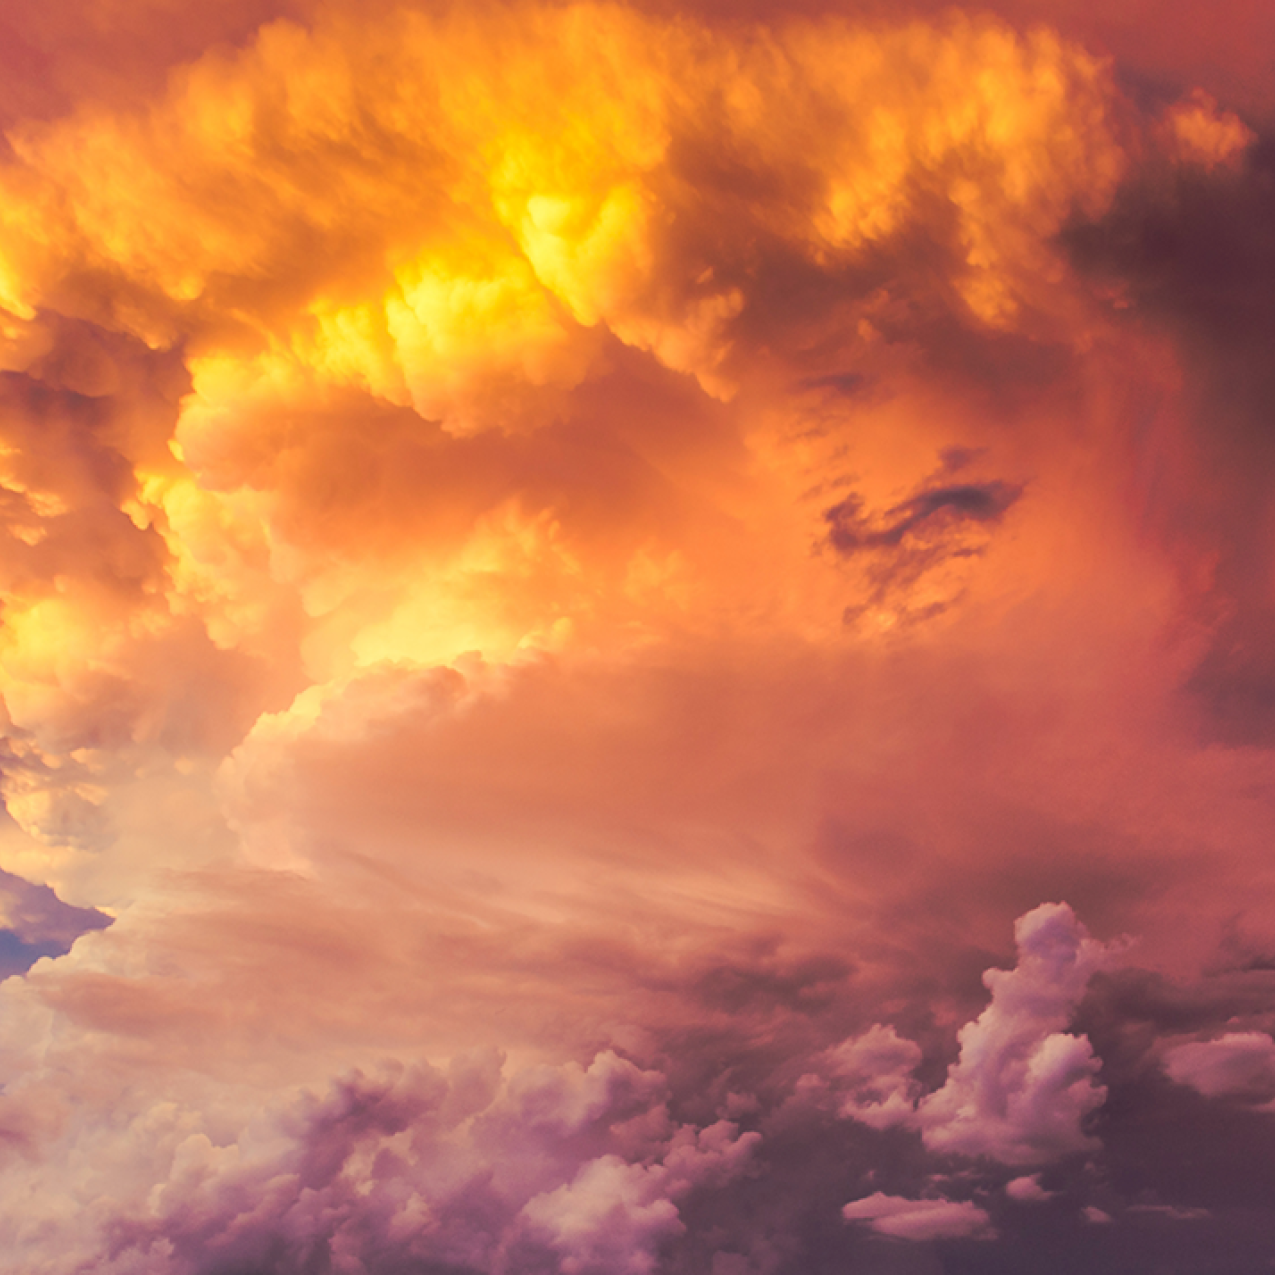 storm cloud at sunset